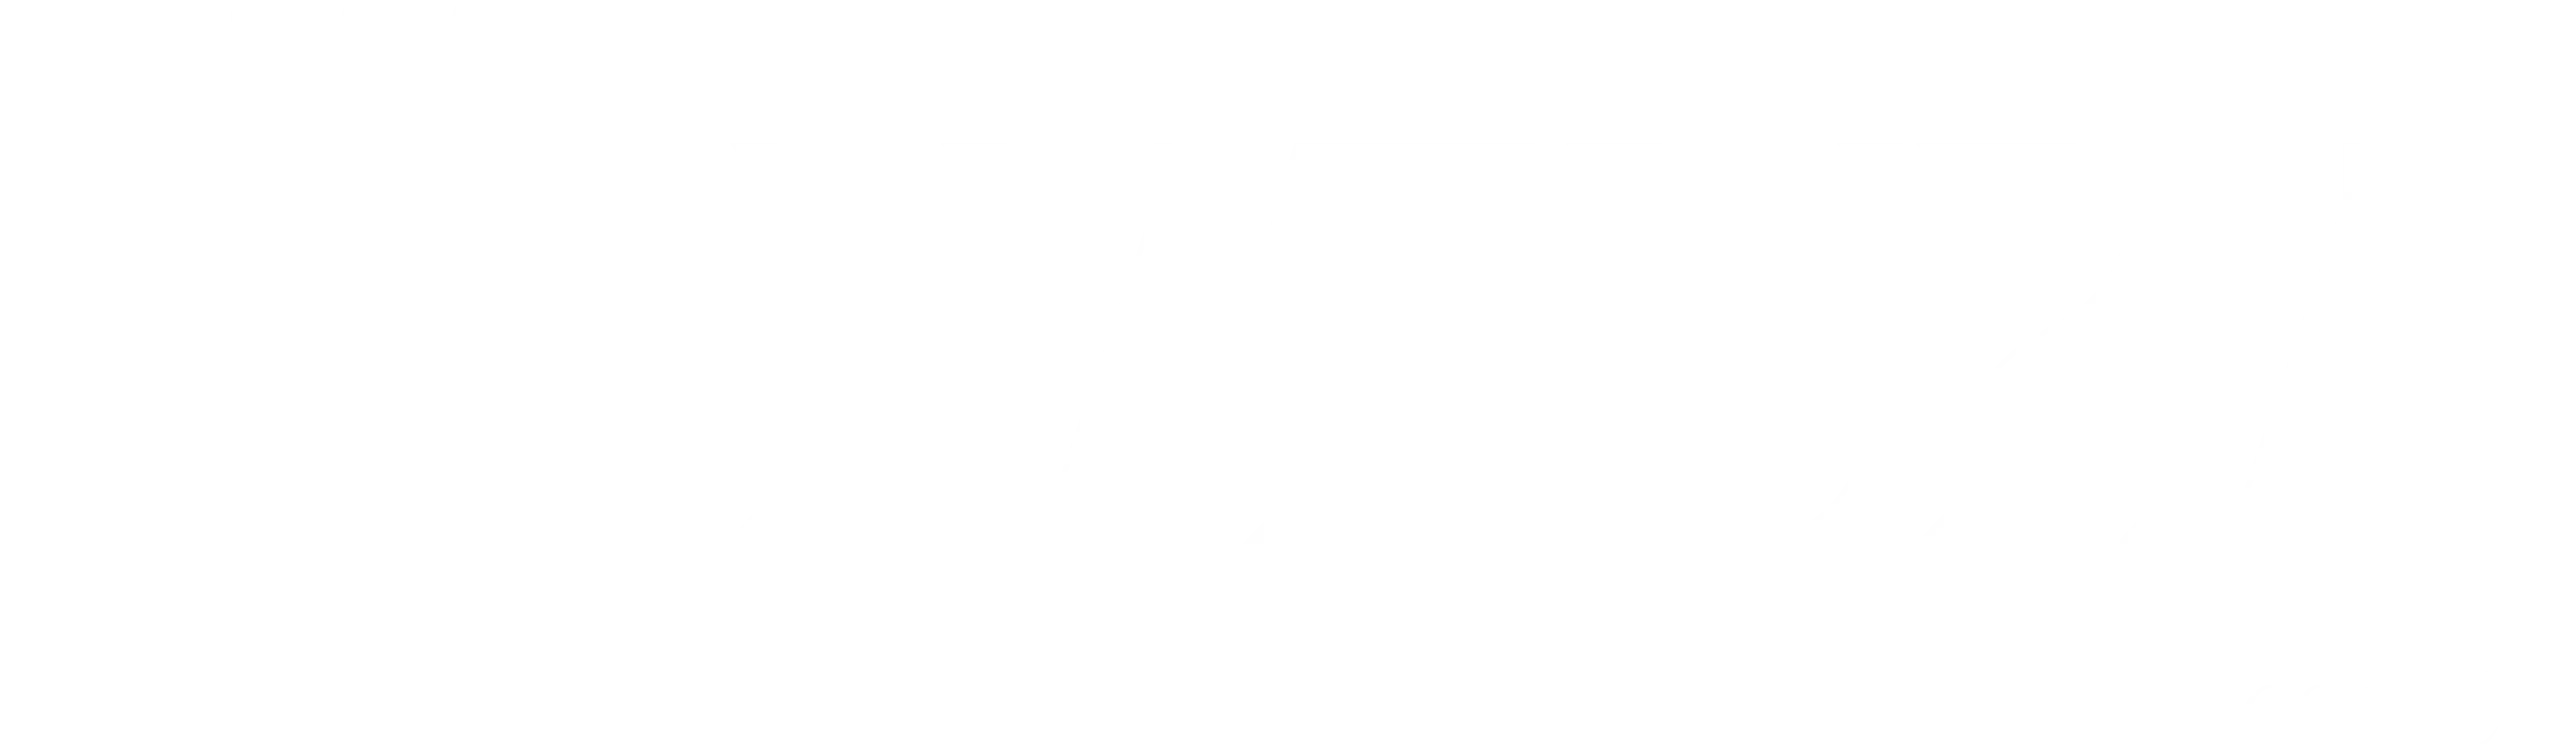 Natura Resorts